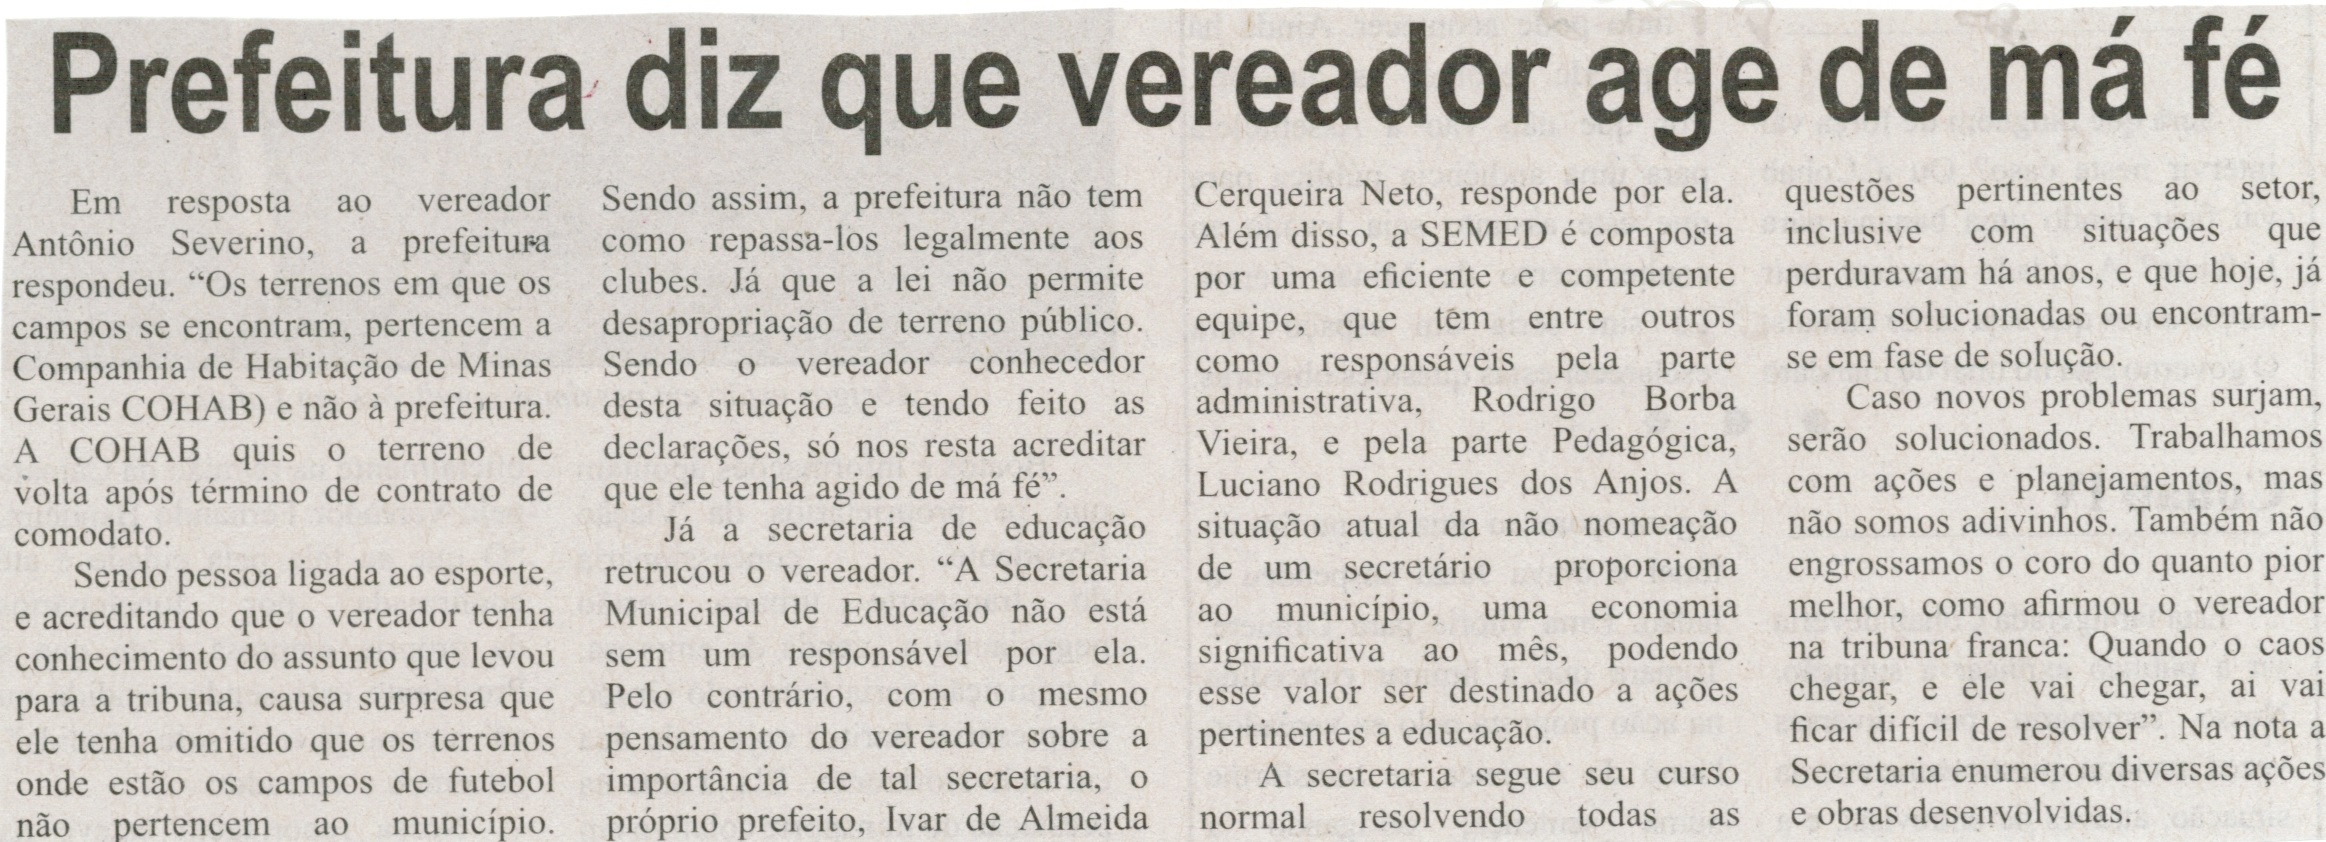 Prefeitura diz que vereador age de má fé. Correio de Minas, Conselheiro Lafaiete, 09 ago. 2014, p. 4.